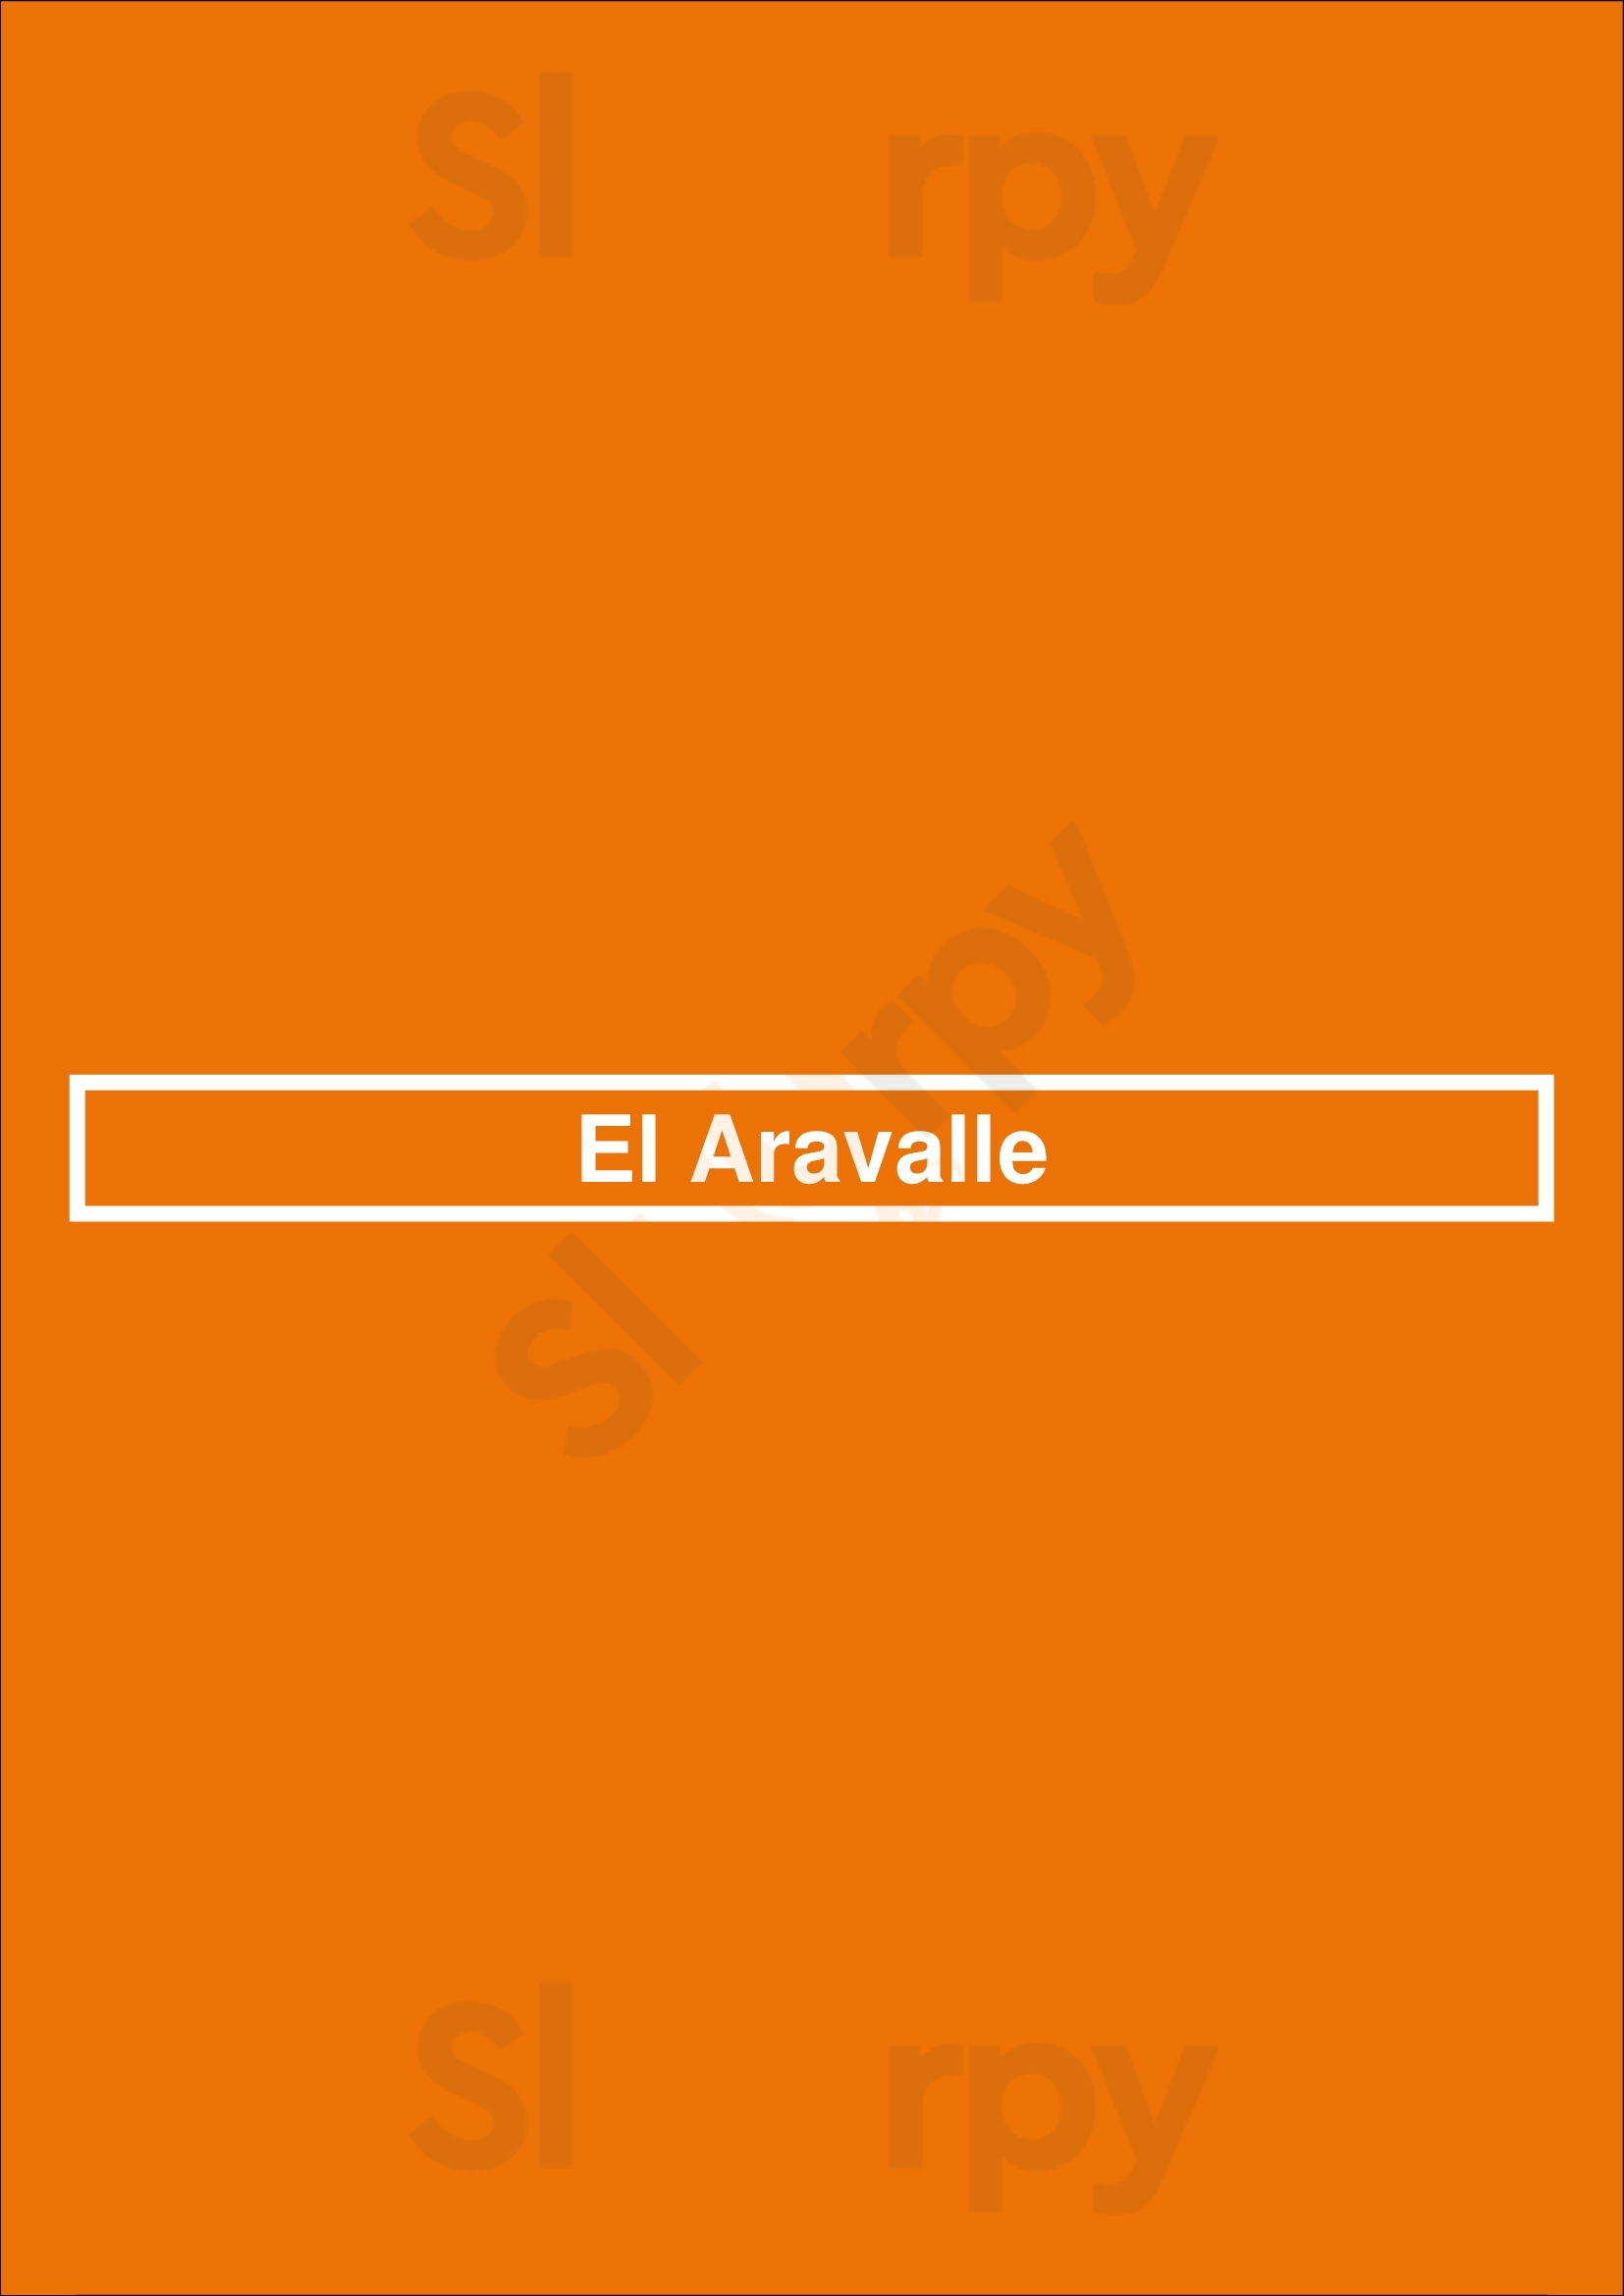 El Aravalle Alcorcón Menu - 1